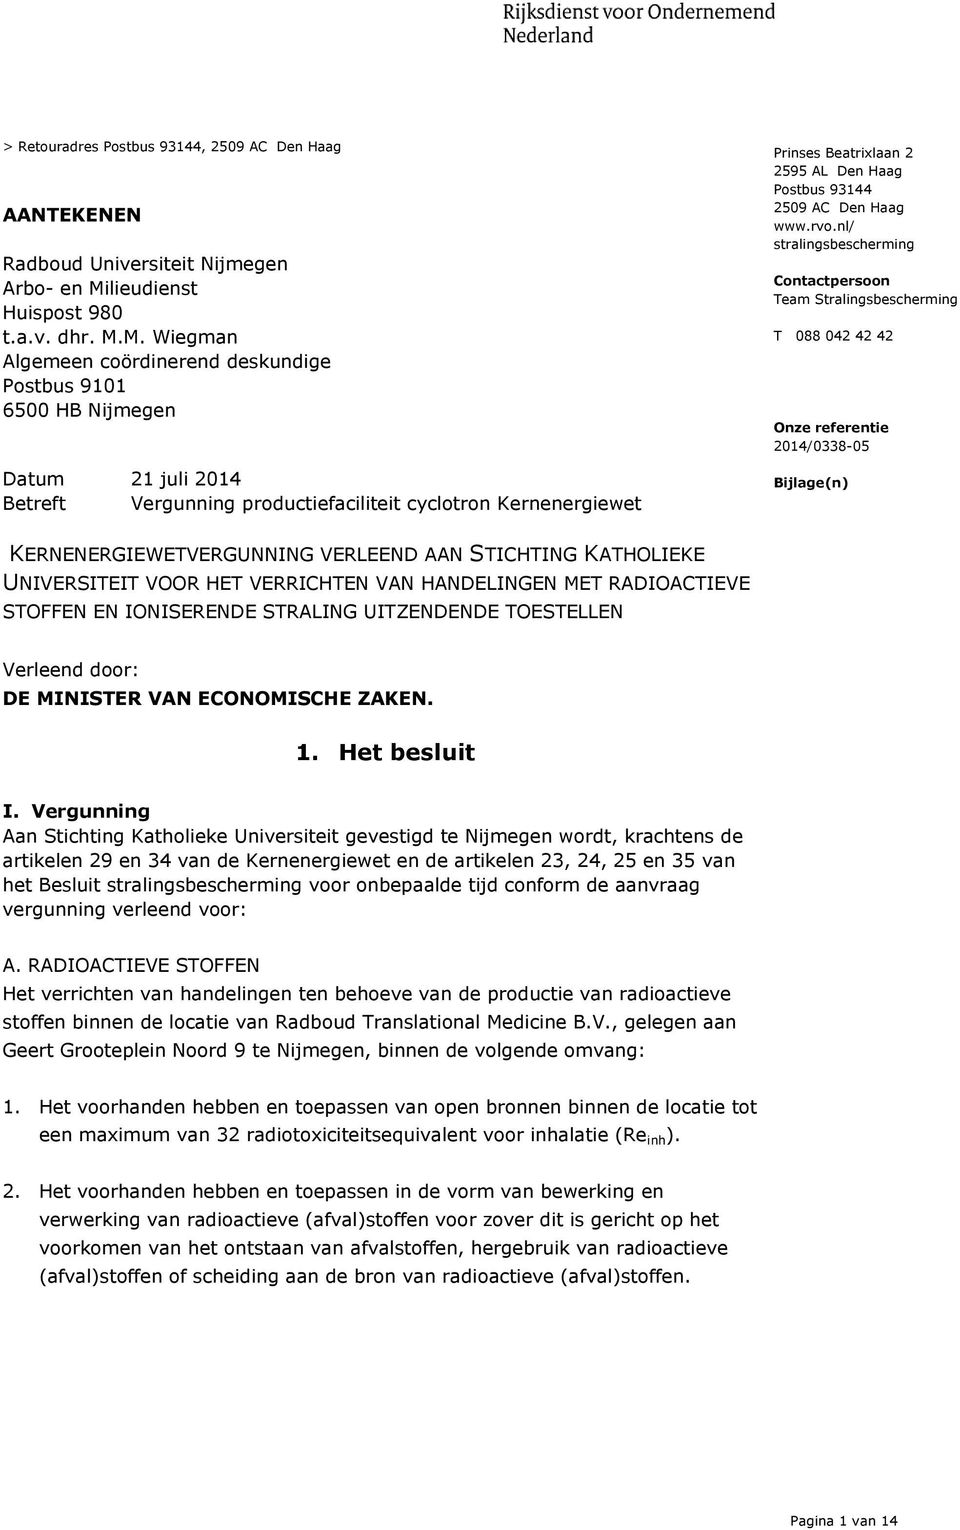 M. Wiegman Algemeen coördinerend deskundige Postbus 9101 6500 HB Nijmegen Datum 21 juli 2014 Betreft Vergunning productiefaciliteit cyclotron Kernenergiewet Prinses Beatrixlaan 2 2595 AL Den Haag